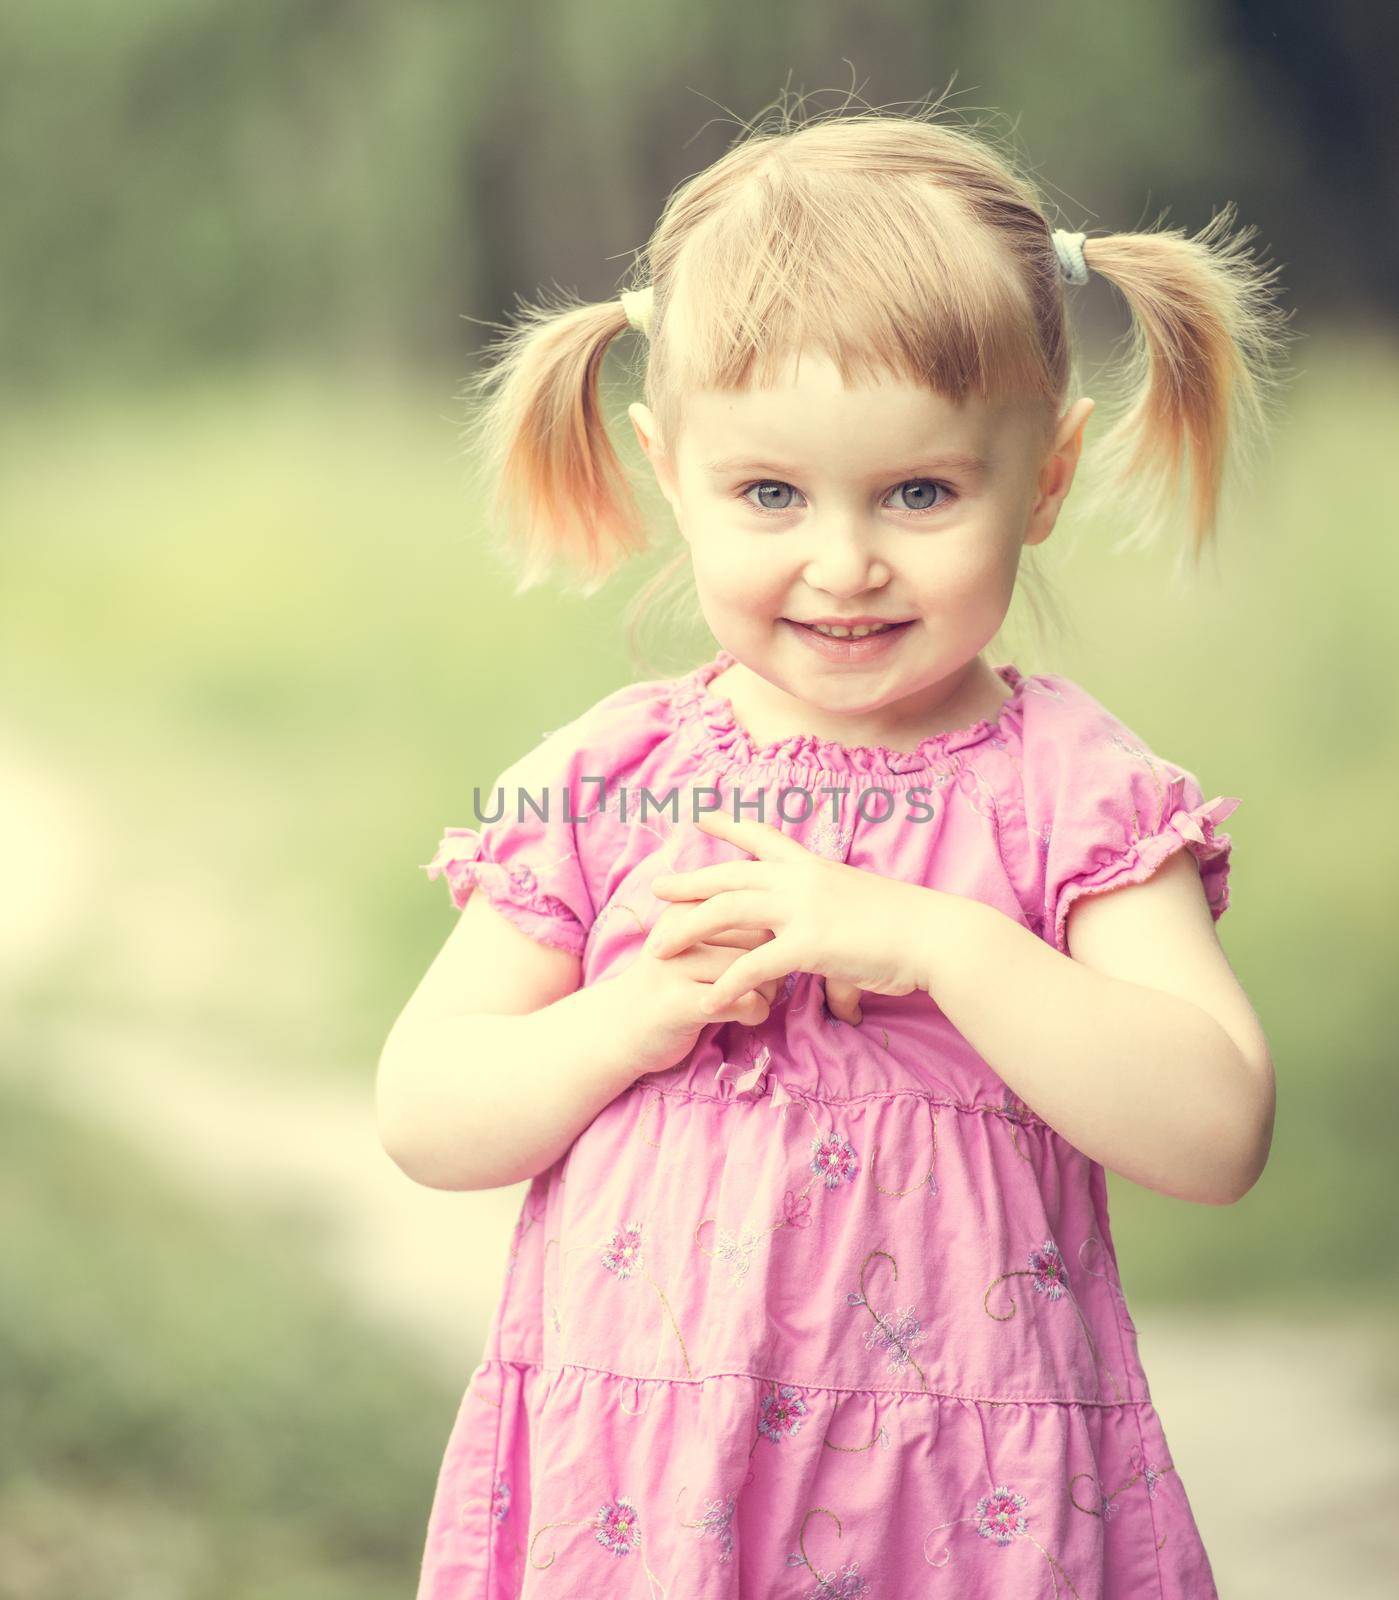 Cute little girl on the meadow by tan4ikk1